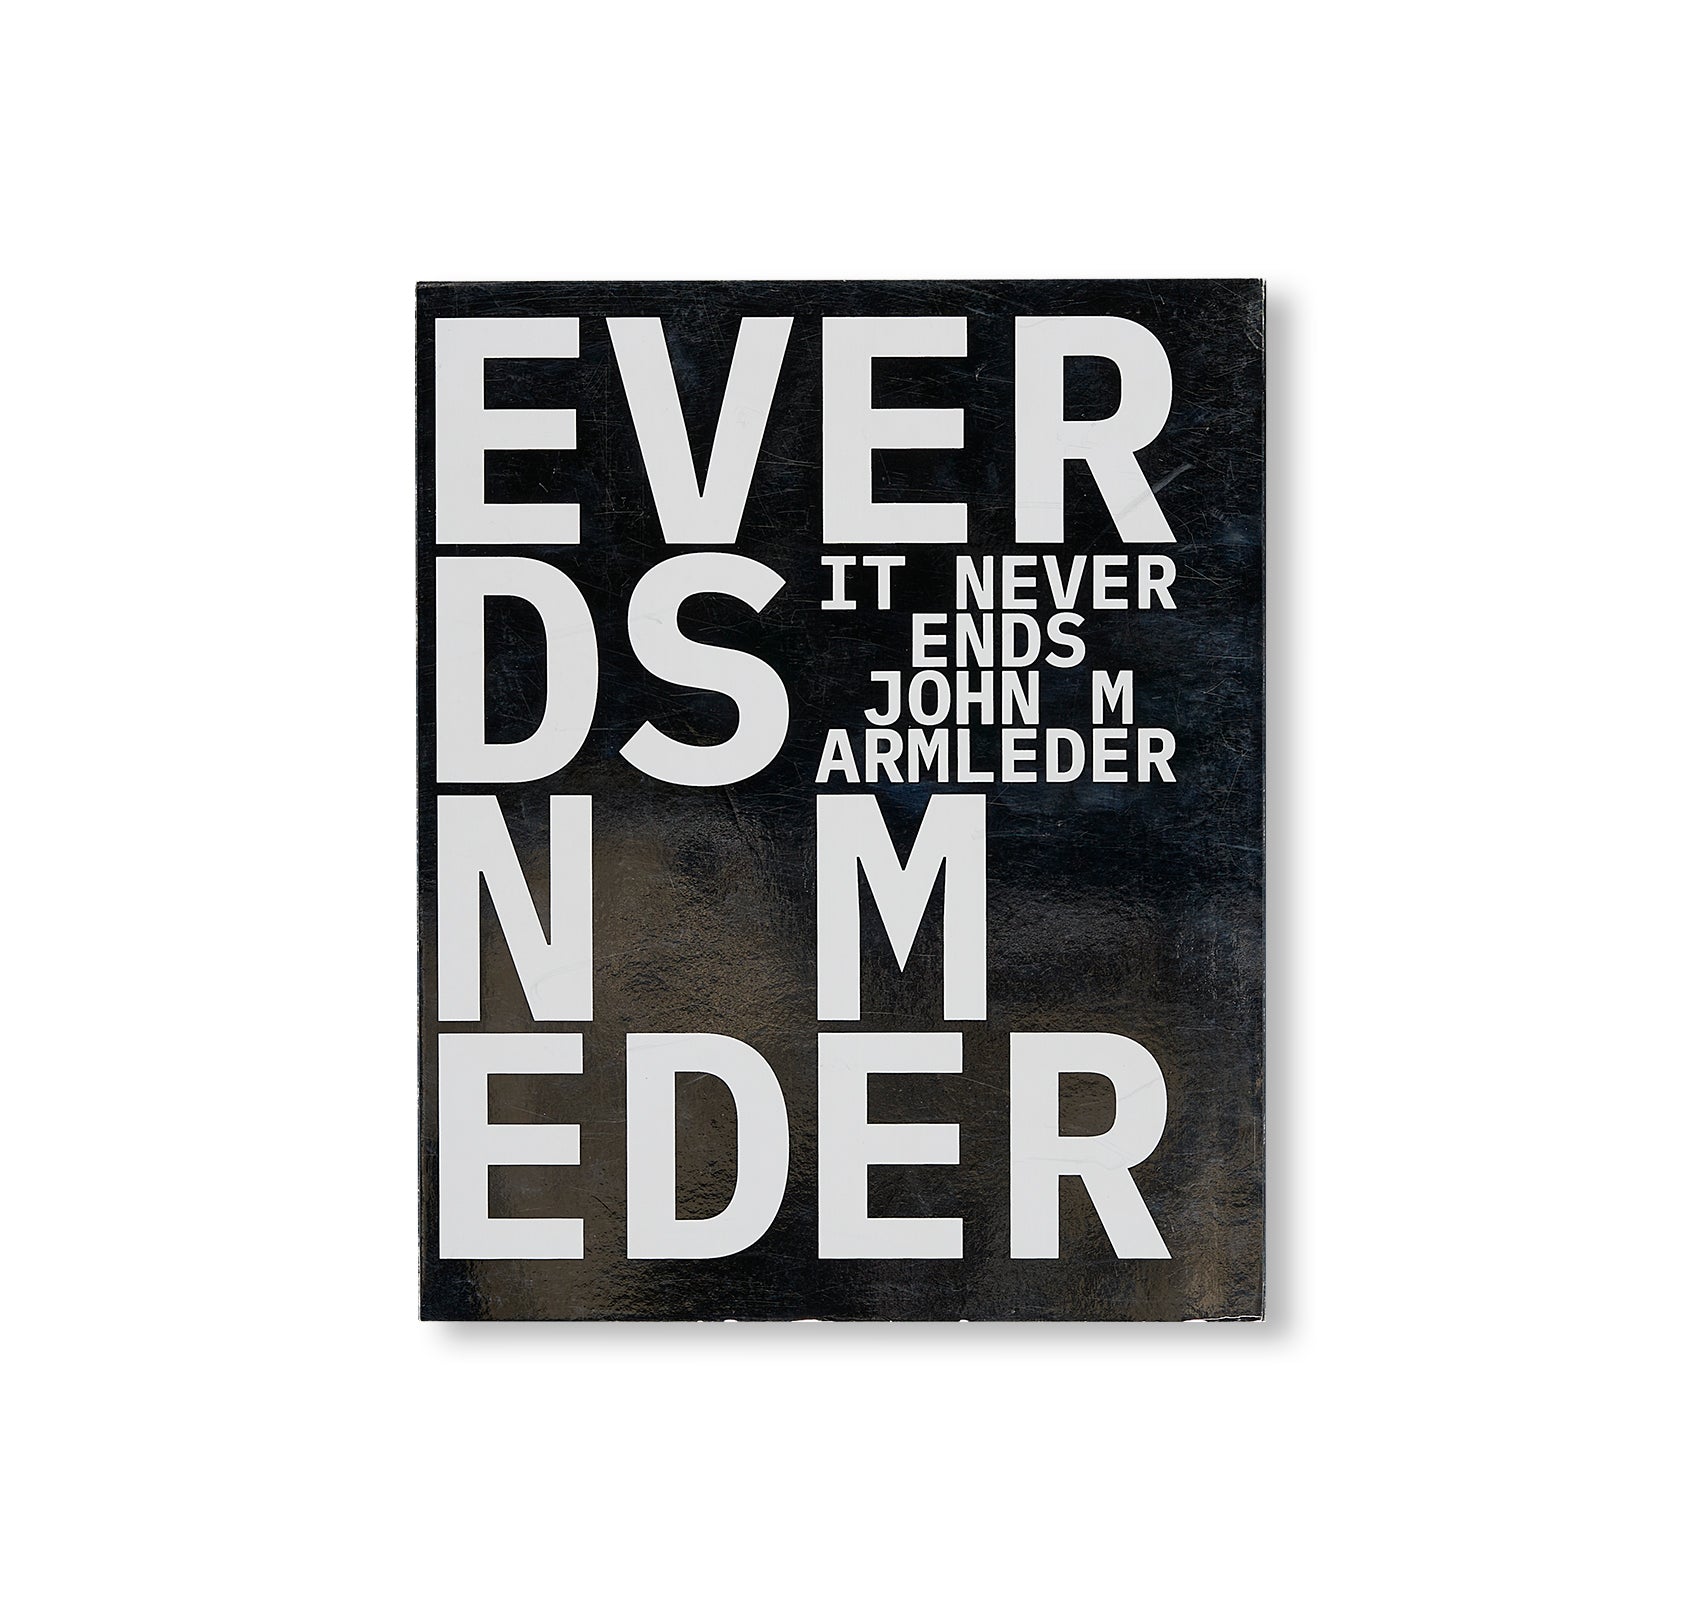 IT NEVER ENDS by John Armleder